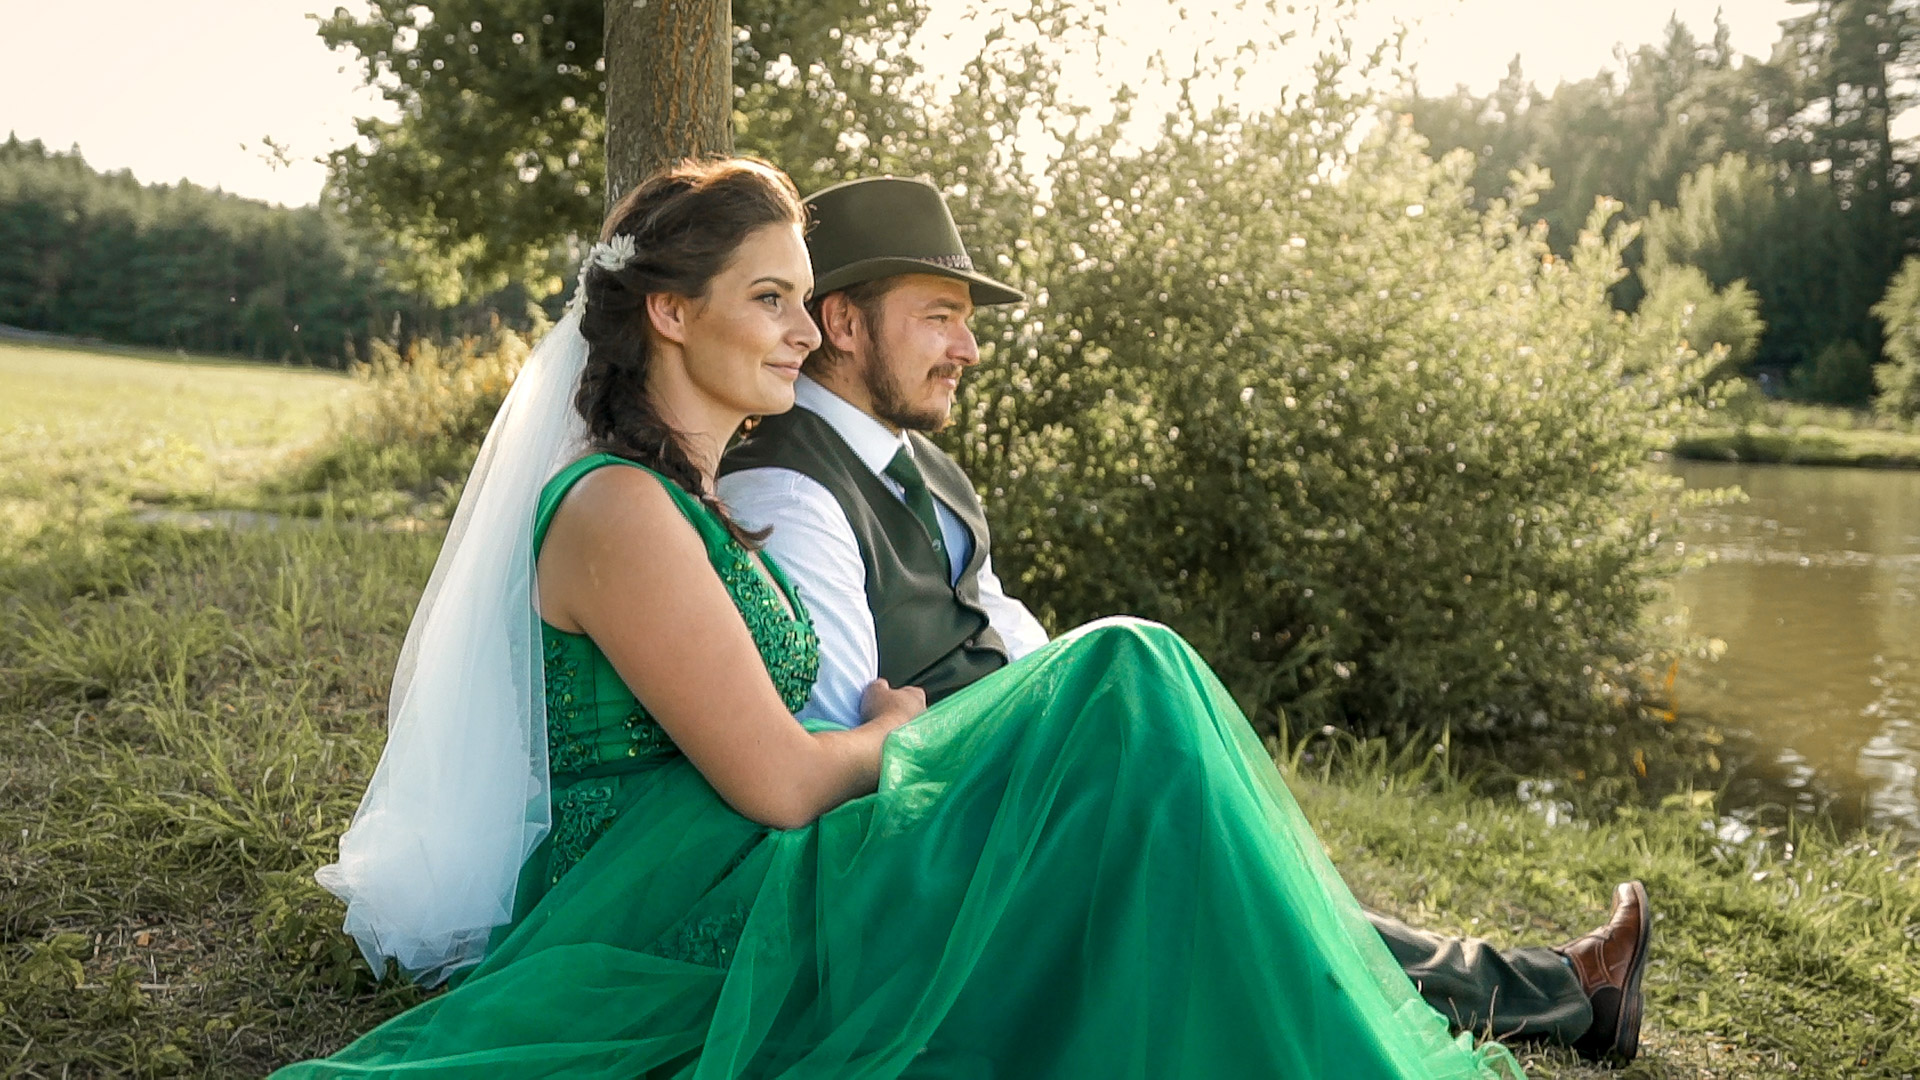 Svatební video ze stylové rybářské svatby u Javořice. Krásná chata v přírodě u lesa